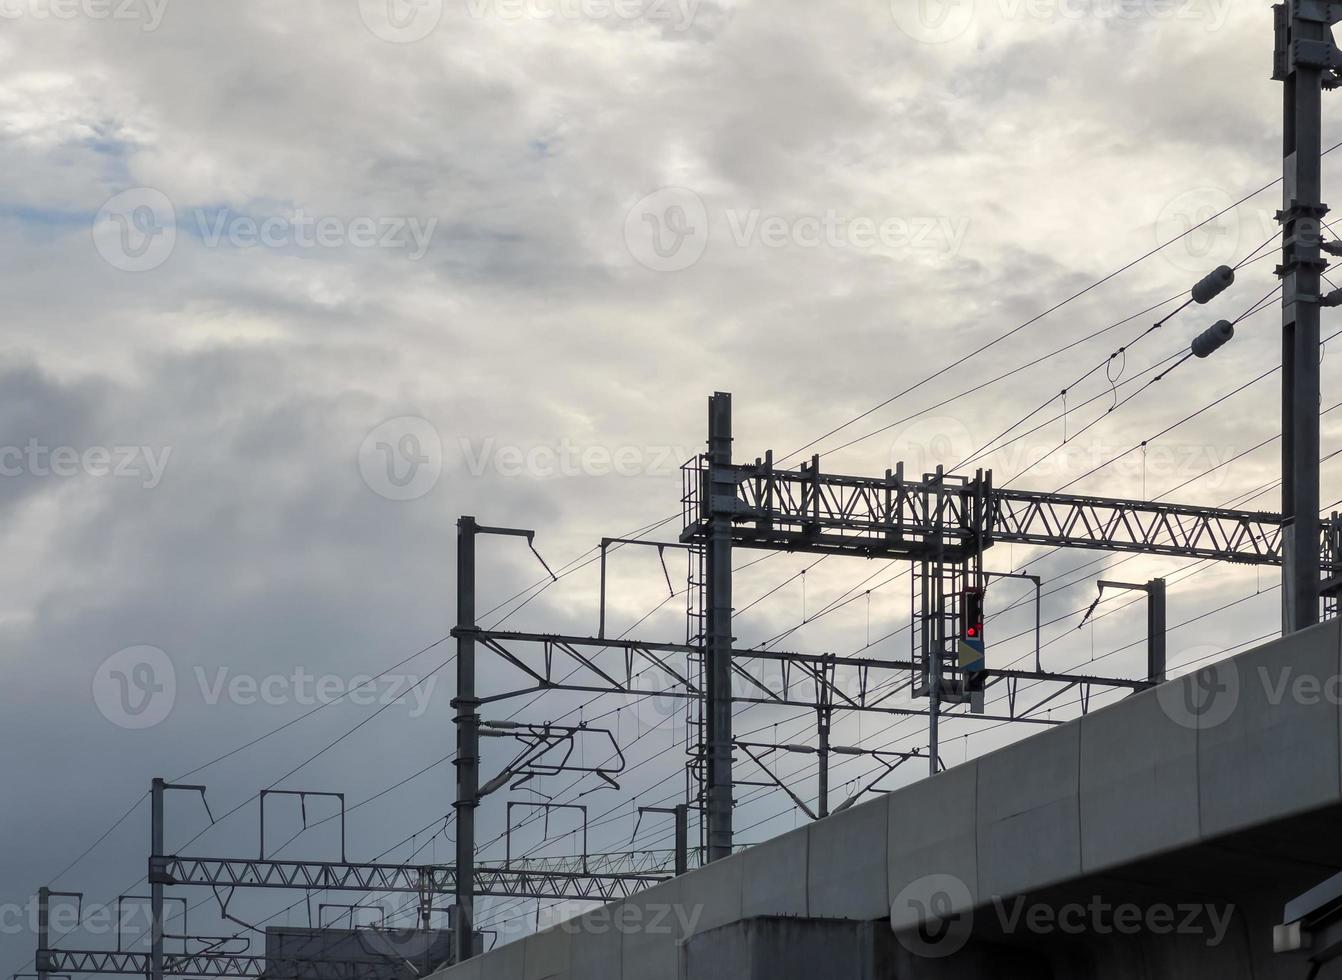 el sistema de cables eléctricos de potencia está remando a lo largo del puente ferroviario elevado. foto